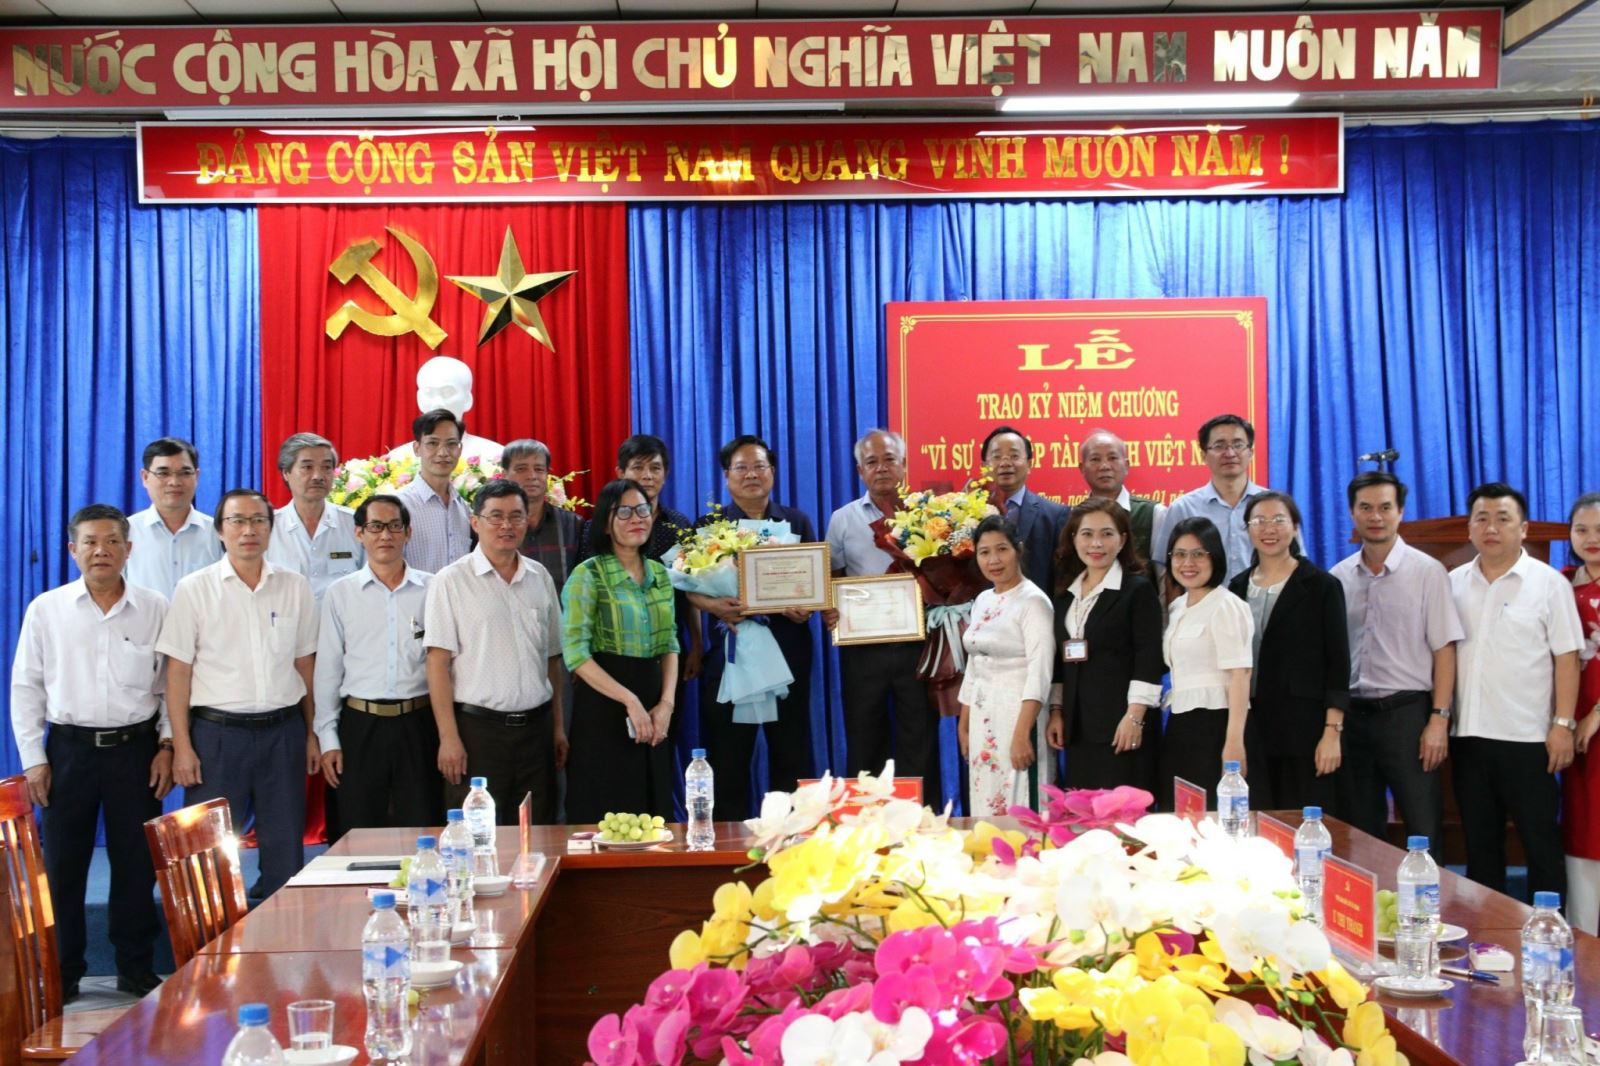 Trao Kỷ niệm chương “Vì sự nghiệp Tài chính Việt Nam”